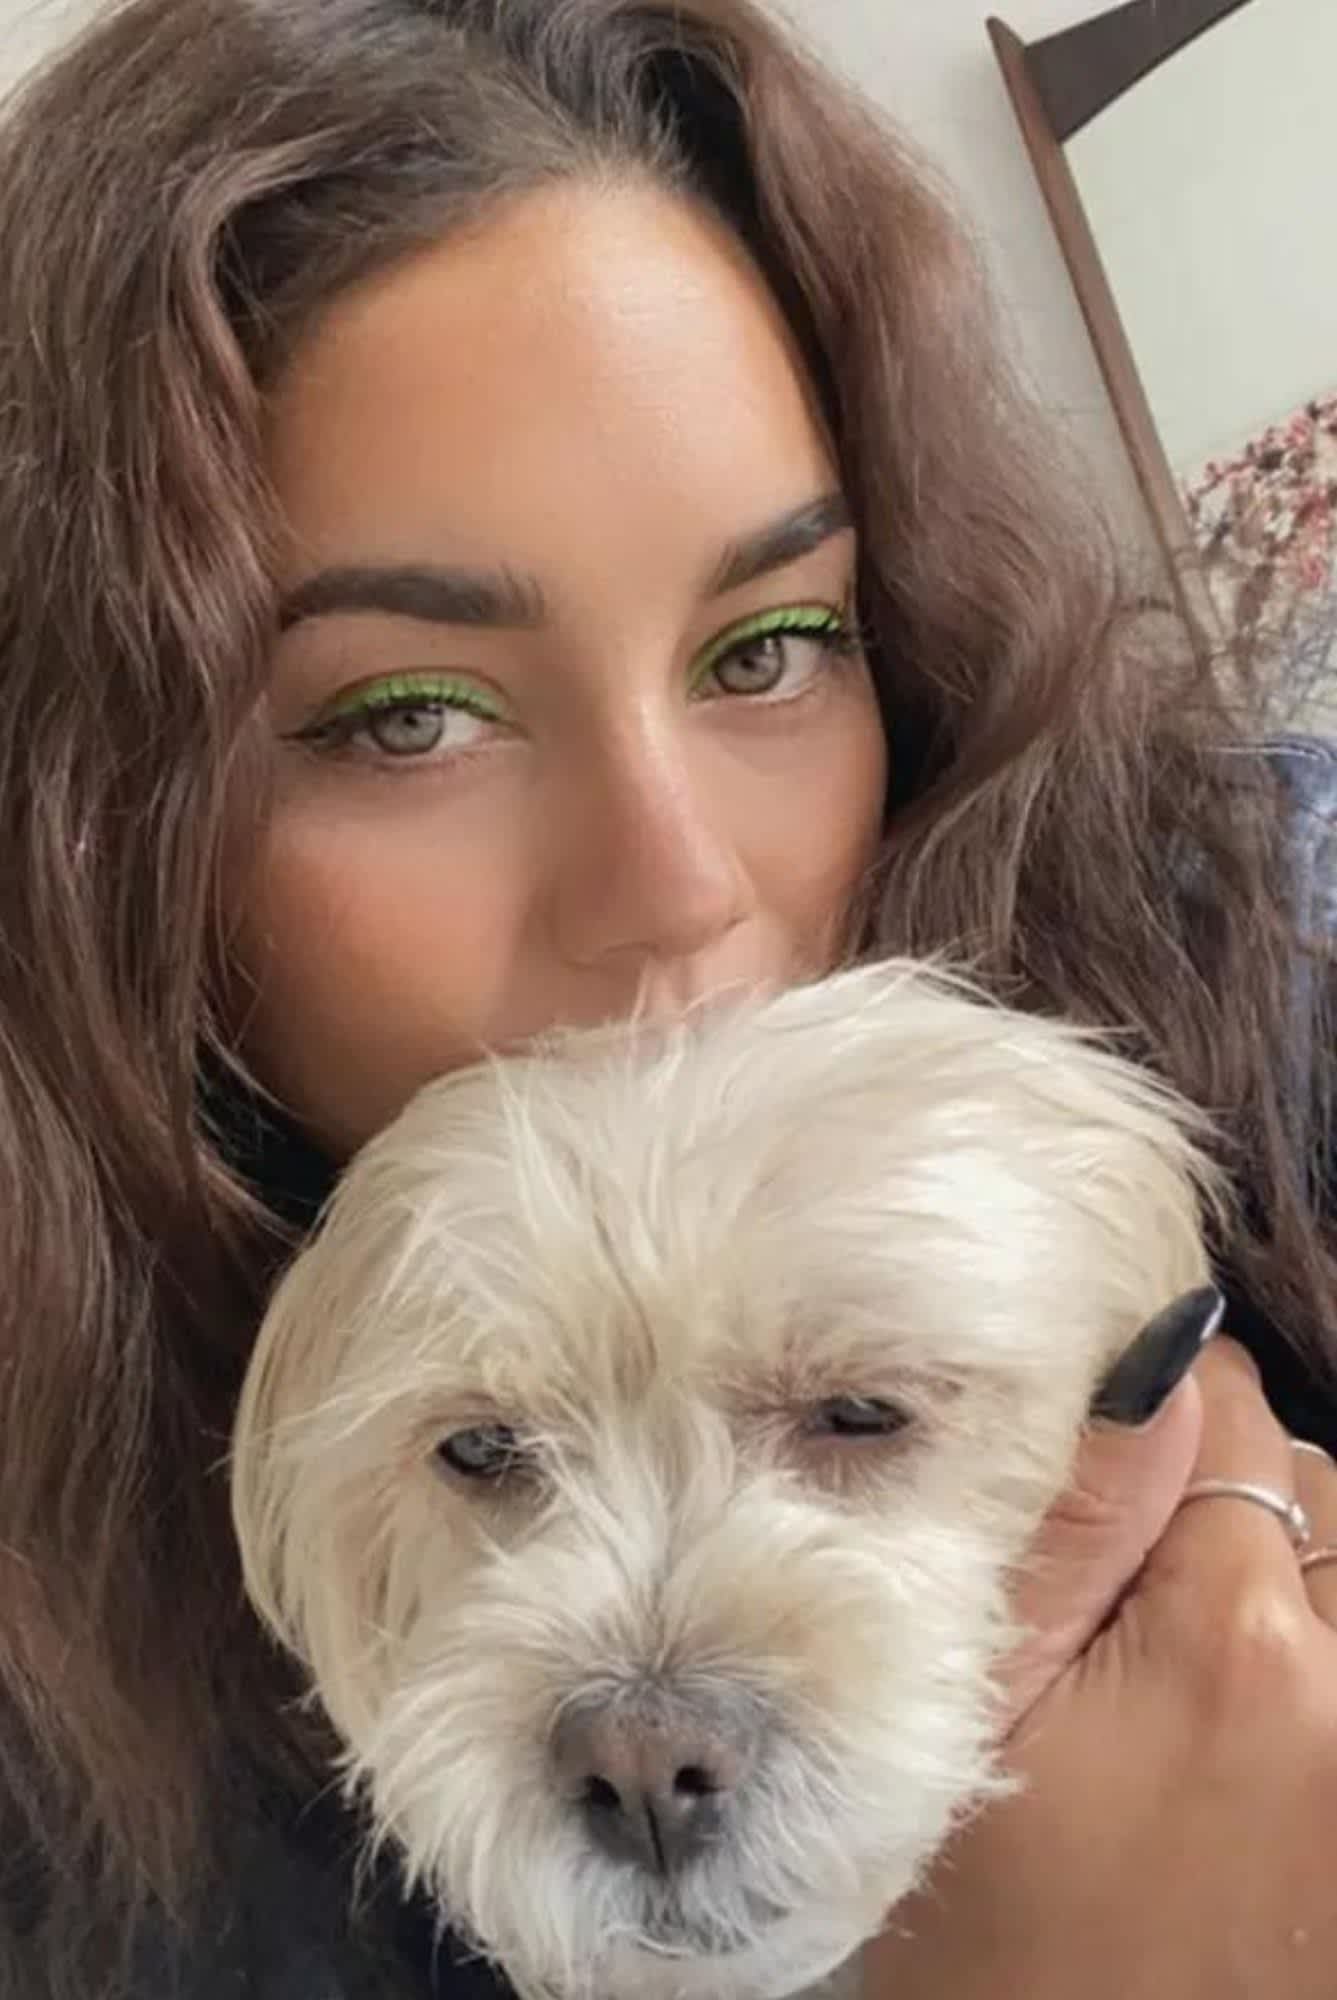 Vanessa Hudgens wearing neon green eyeliner